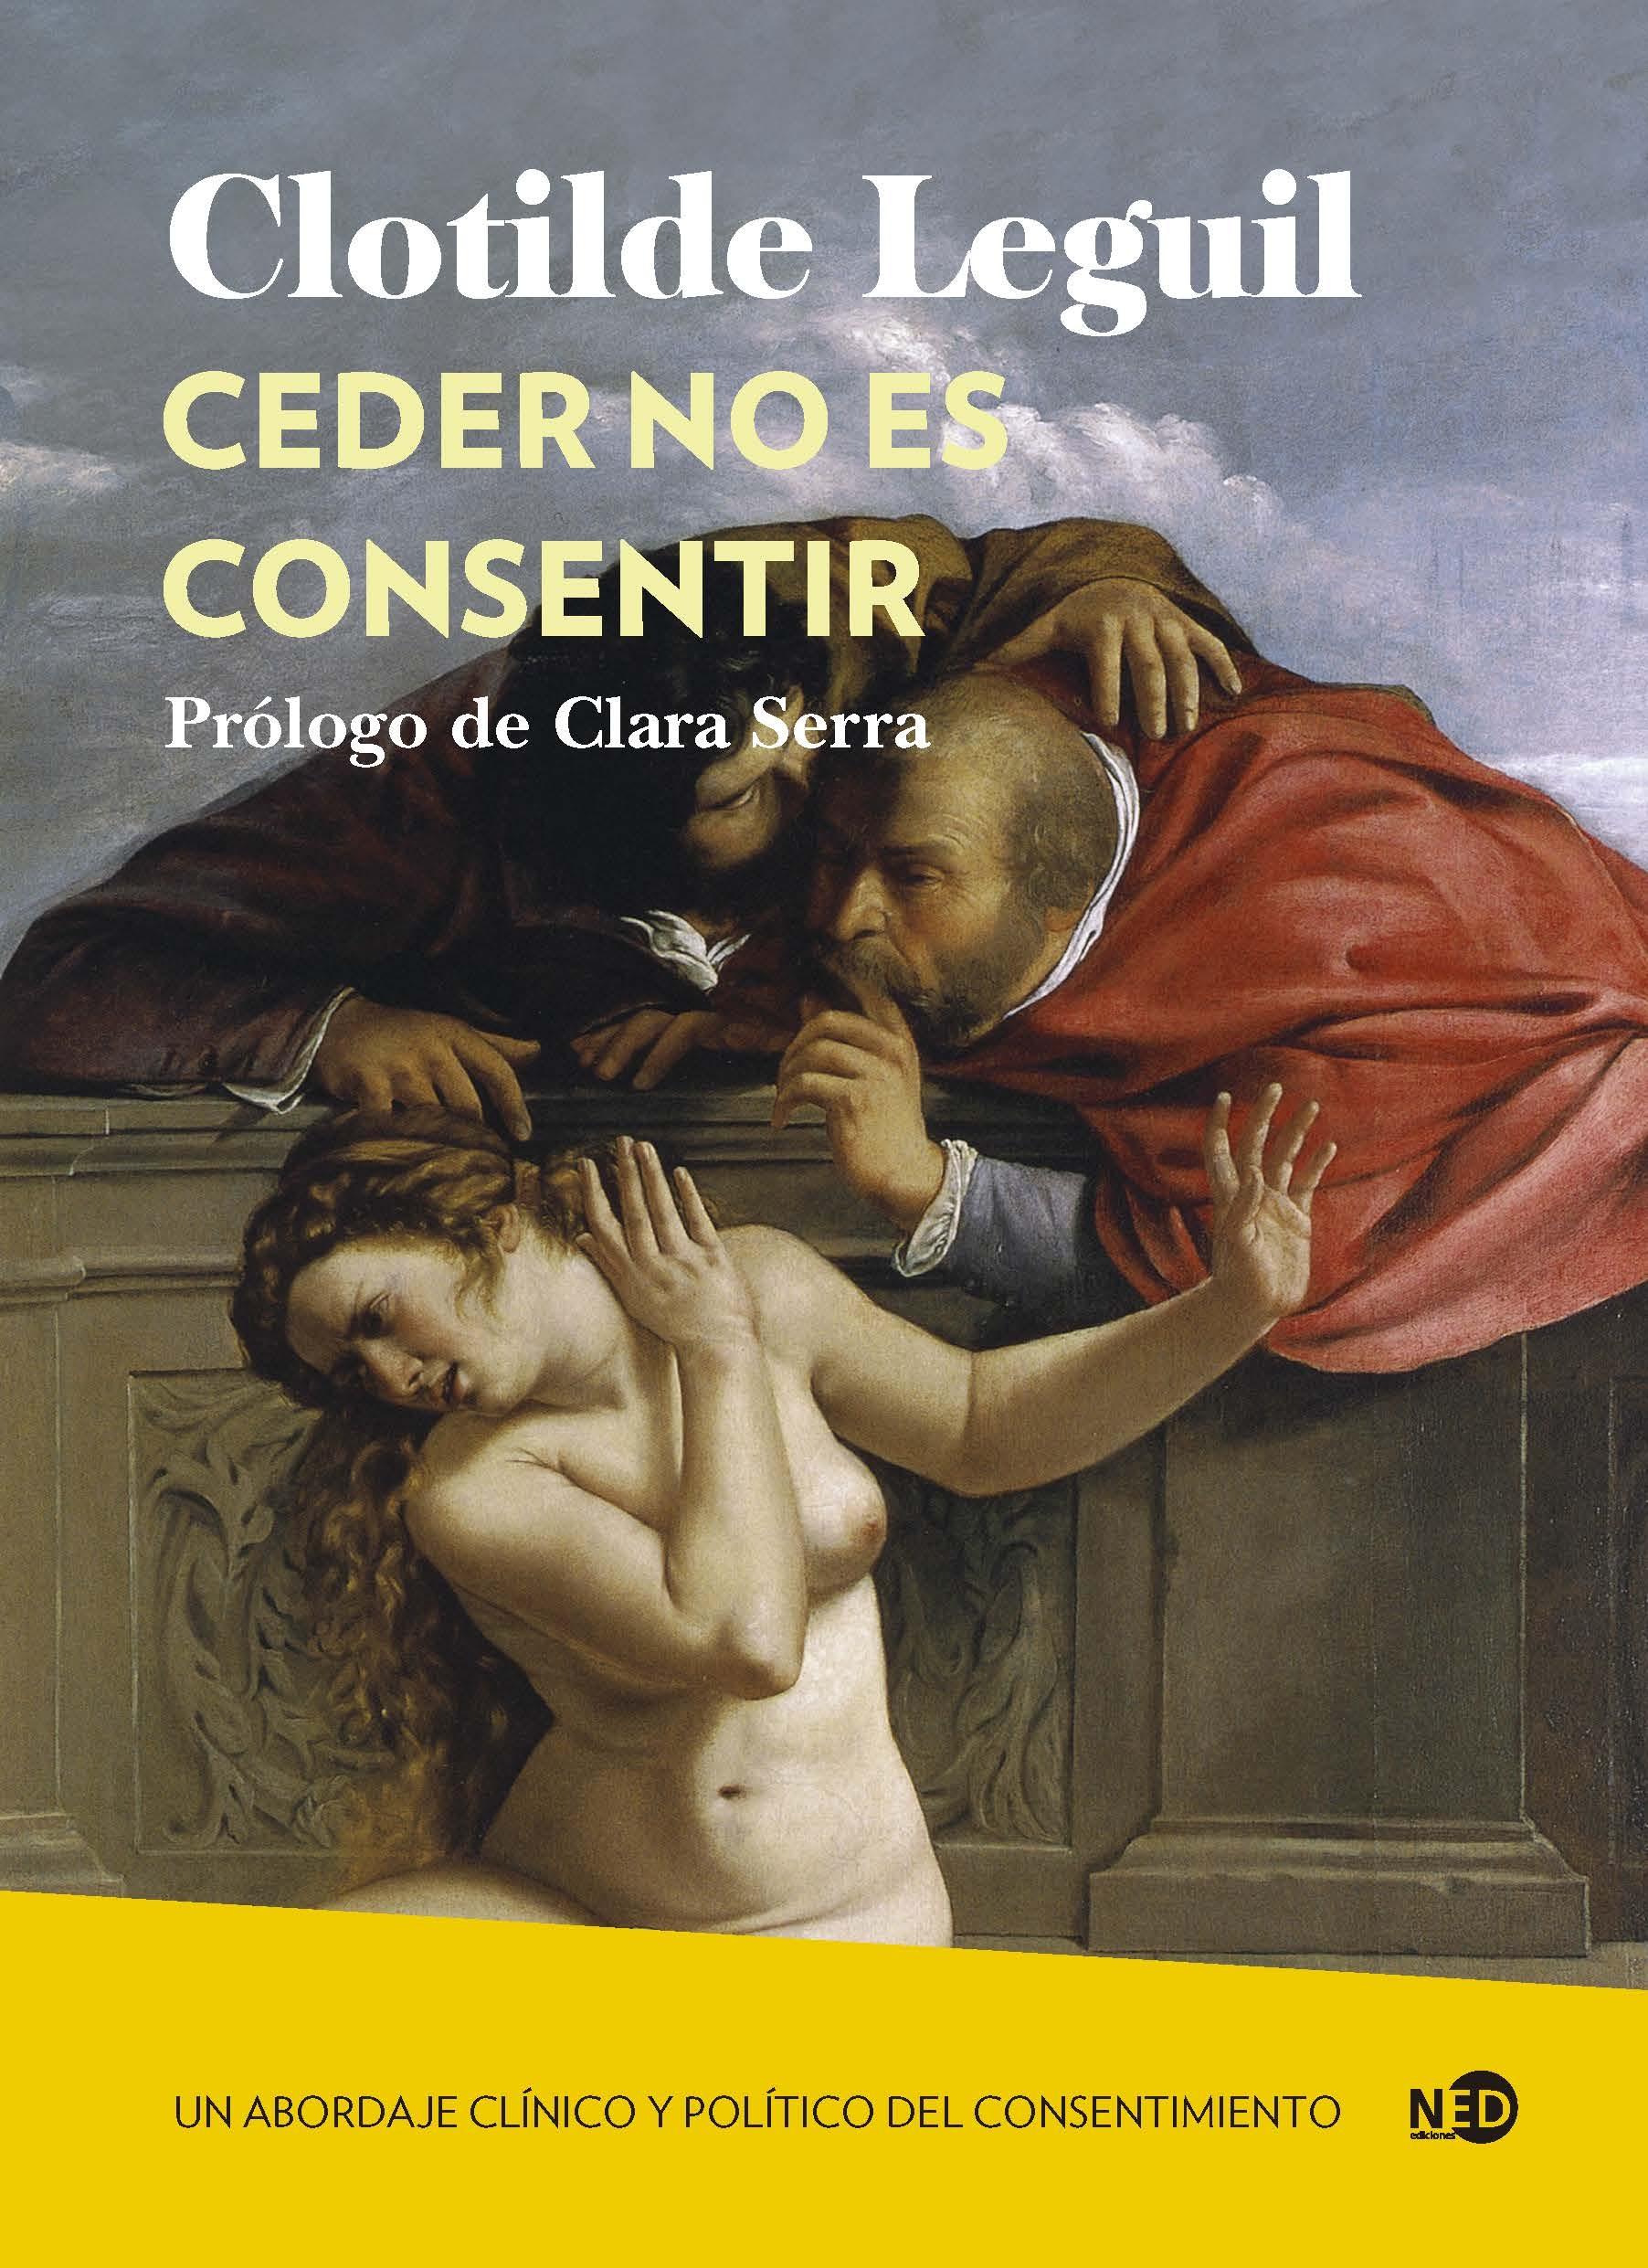 Ceder no es consentir "Un abordaje clínico y político del consentimiento"